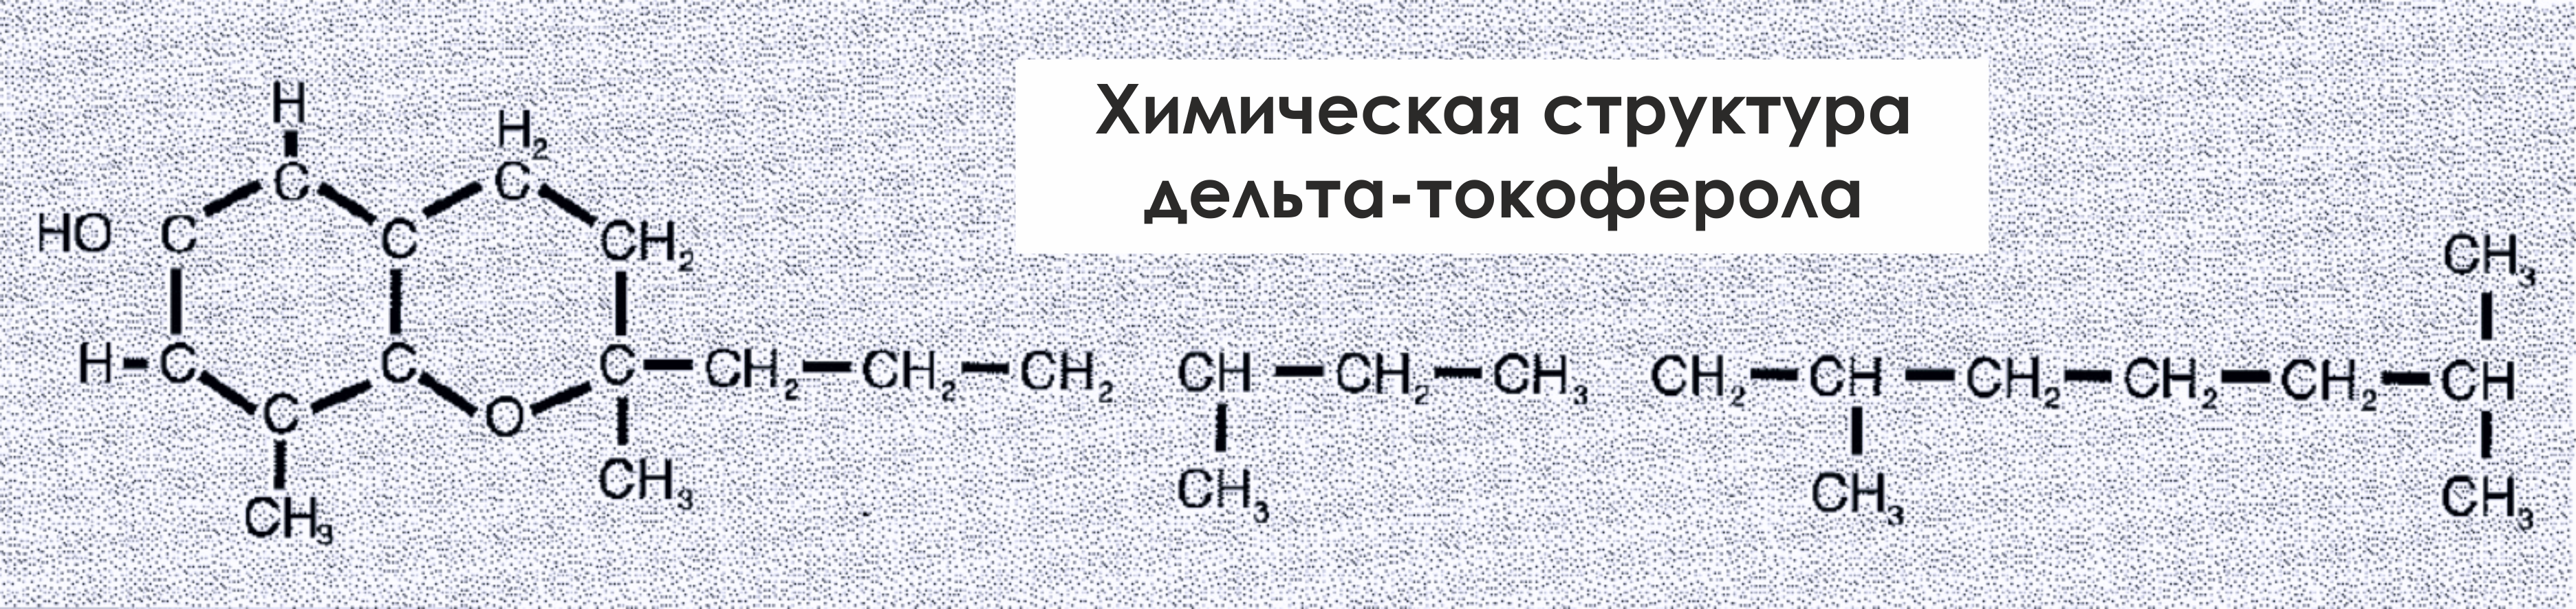 Химическая структура дельта-токоферола